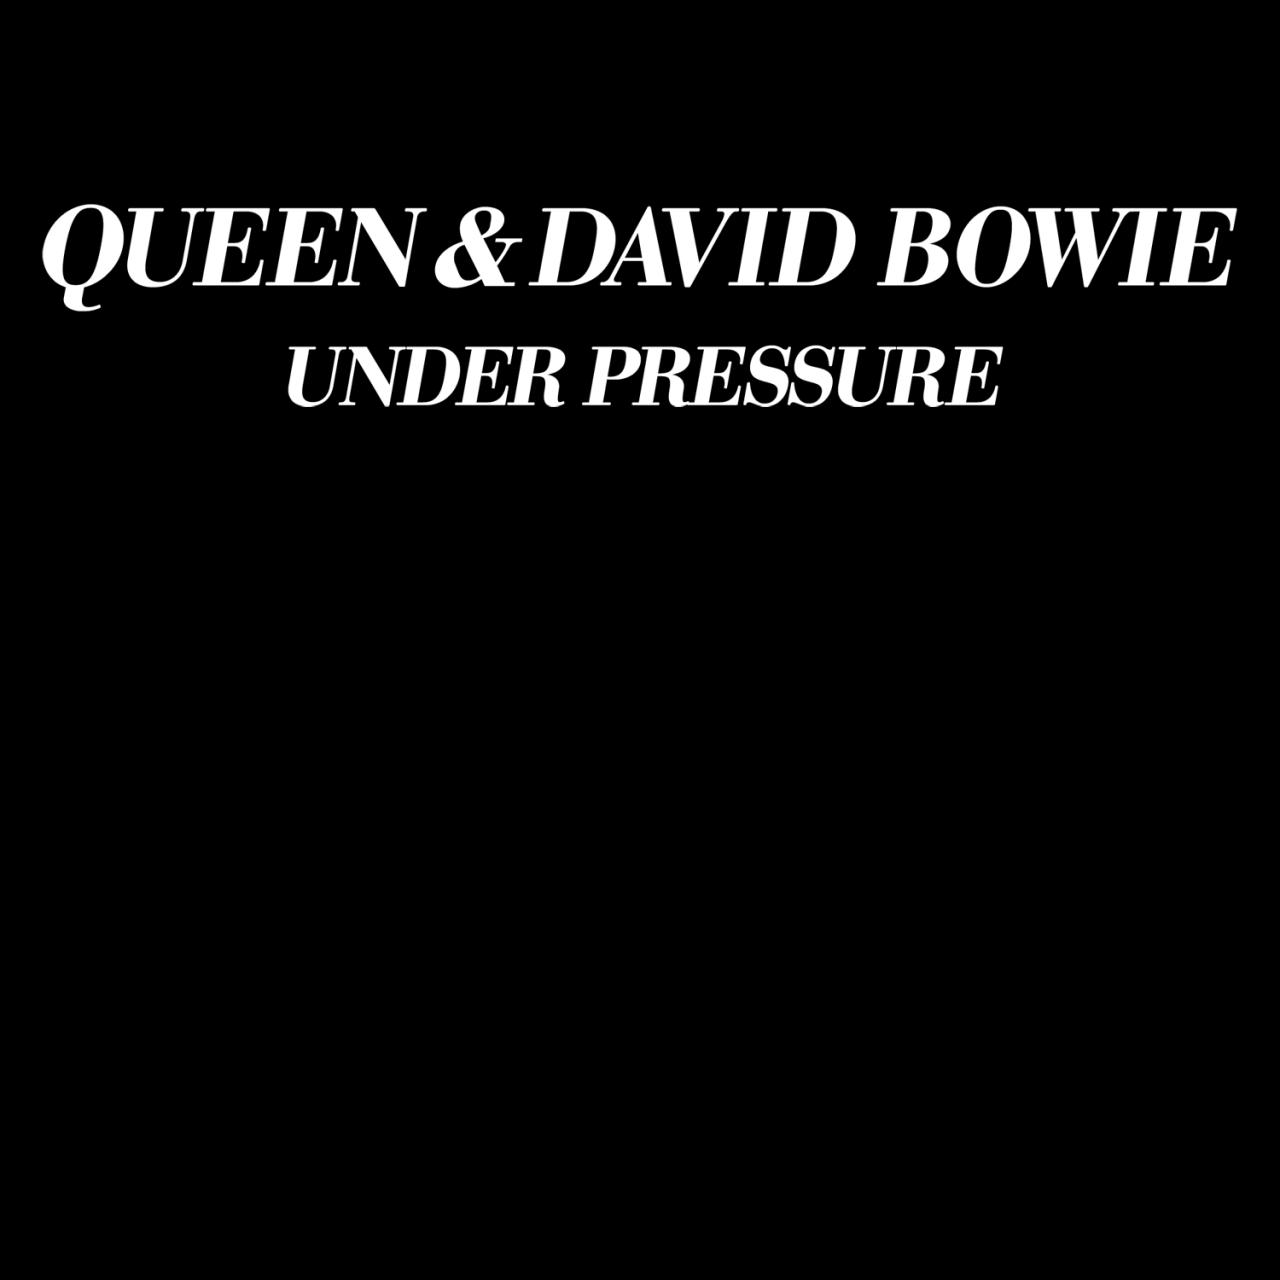 Queen & David Bowie - Under Pressure mp3 download